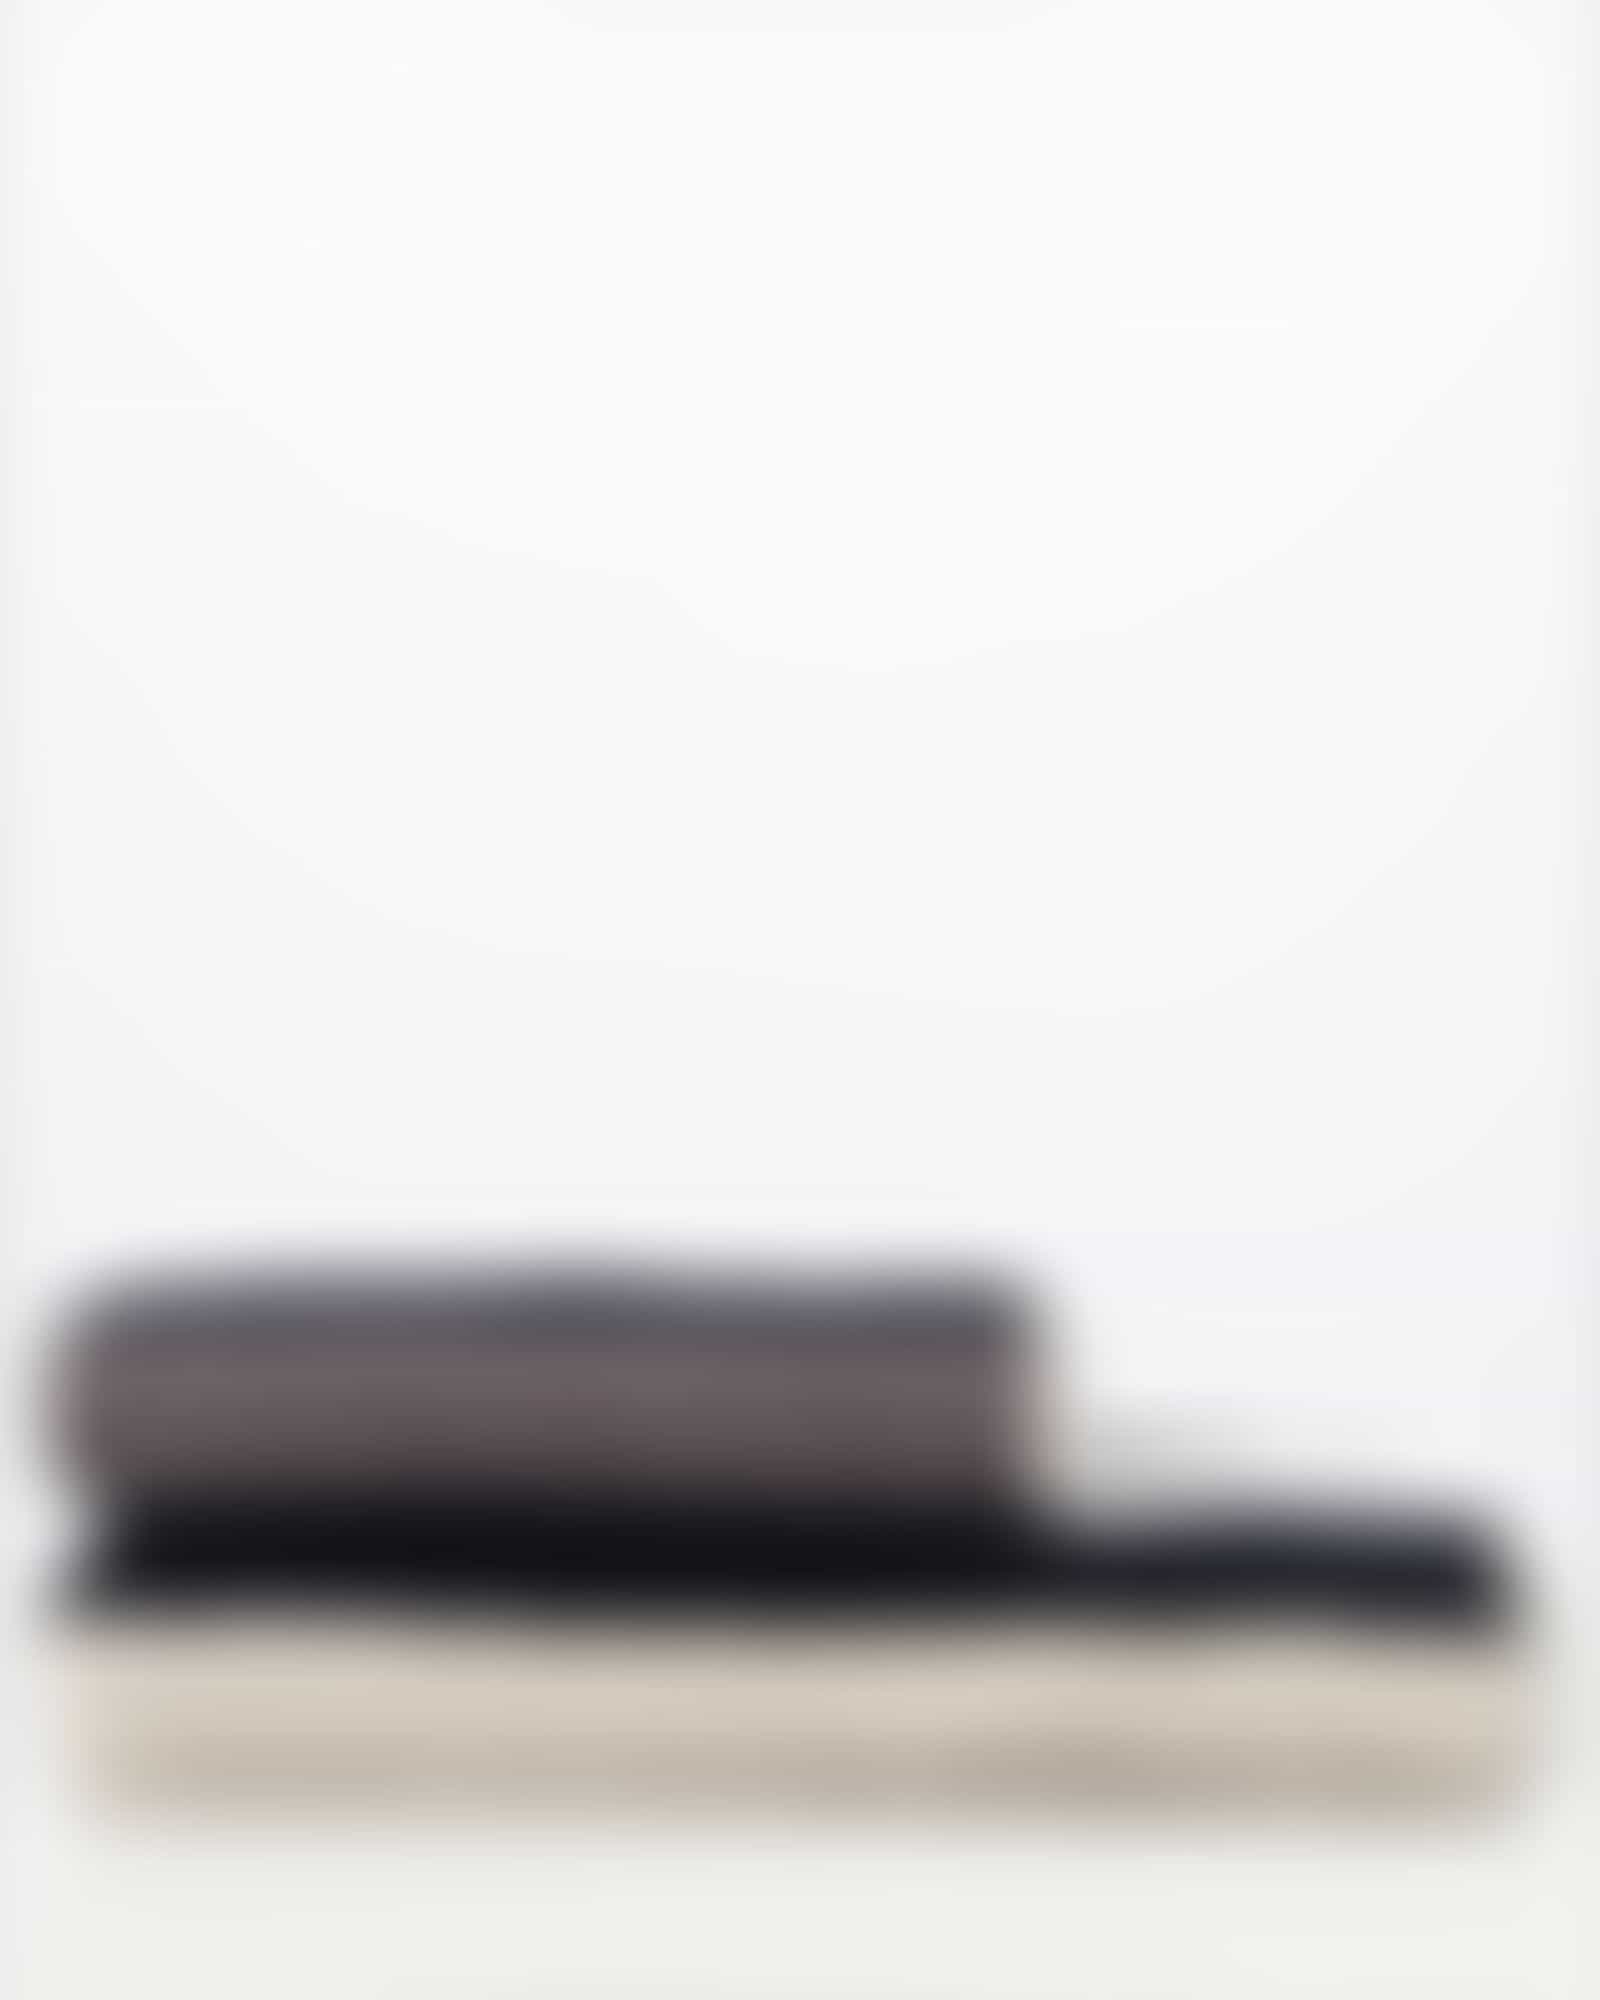 JOOP Tone Streifen 1690 - Farbe: Platin - 77 - Handtuch 50x100 cm Detailbild 3